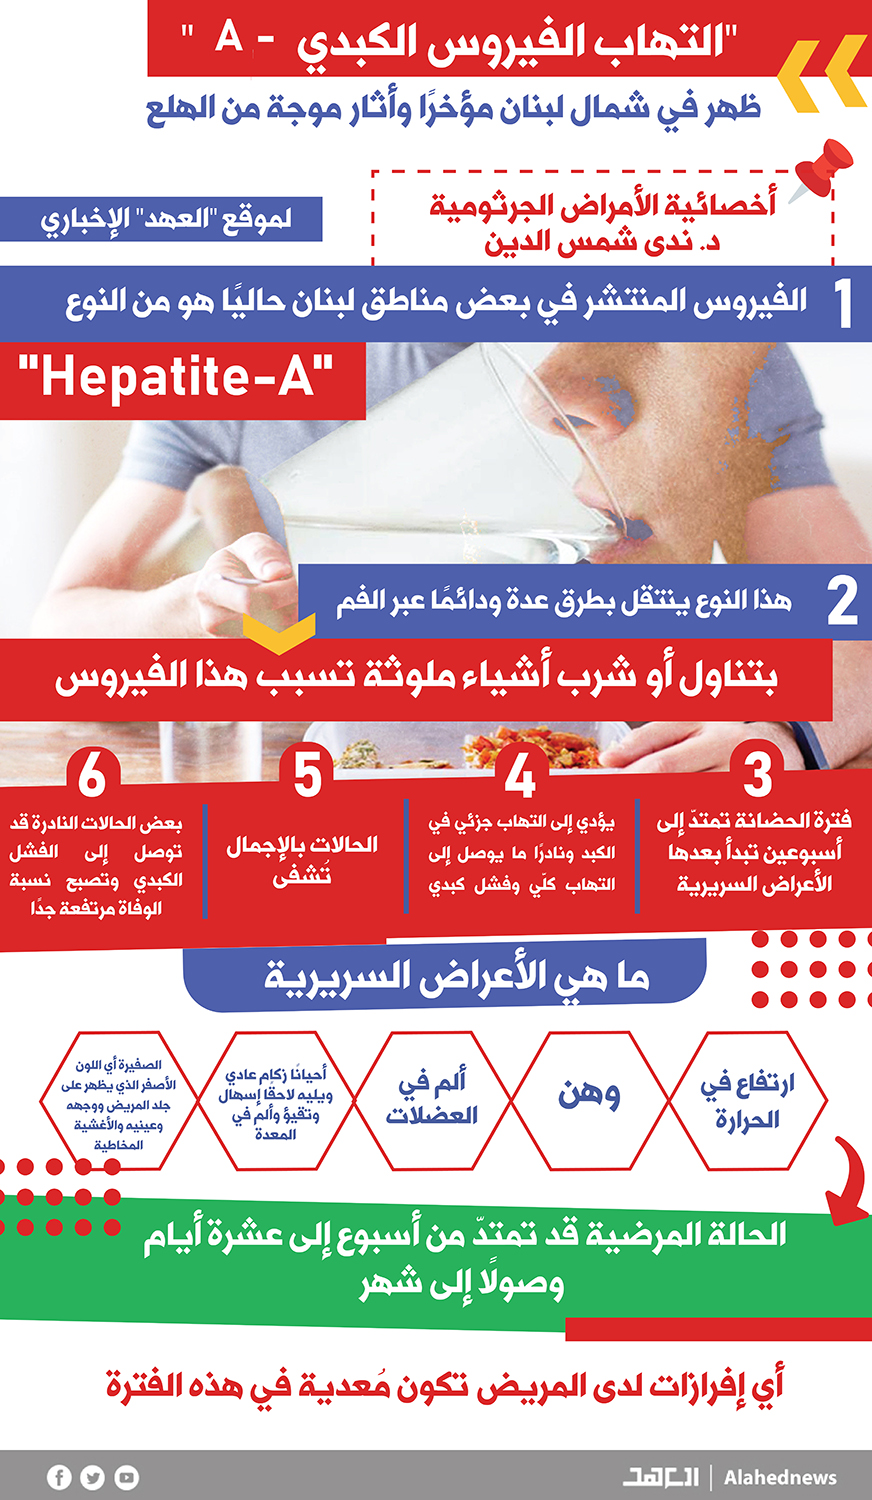 فيروس "Hepatite-A" في لبنان فماذا تعرفون عنه؟